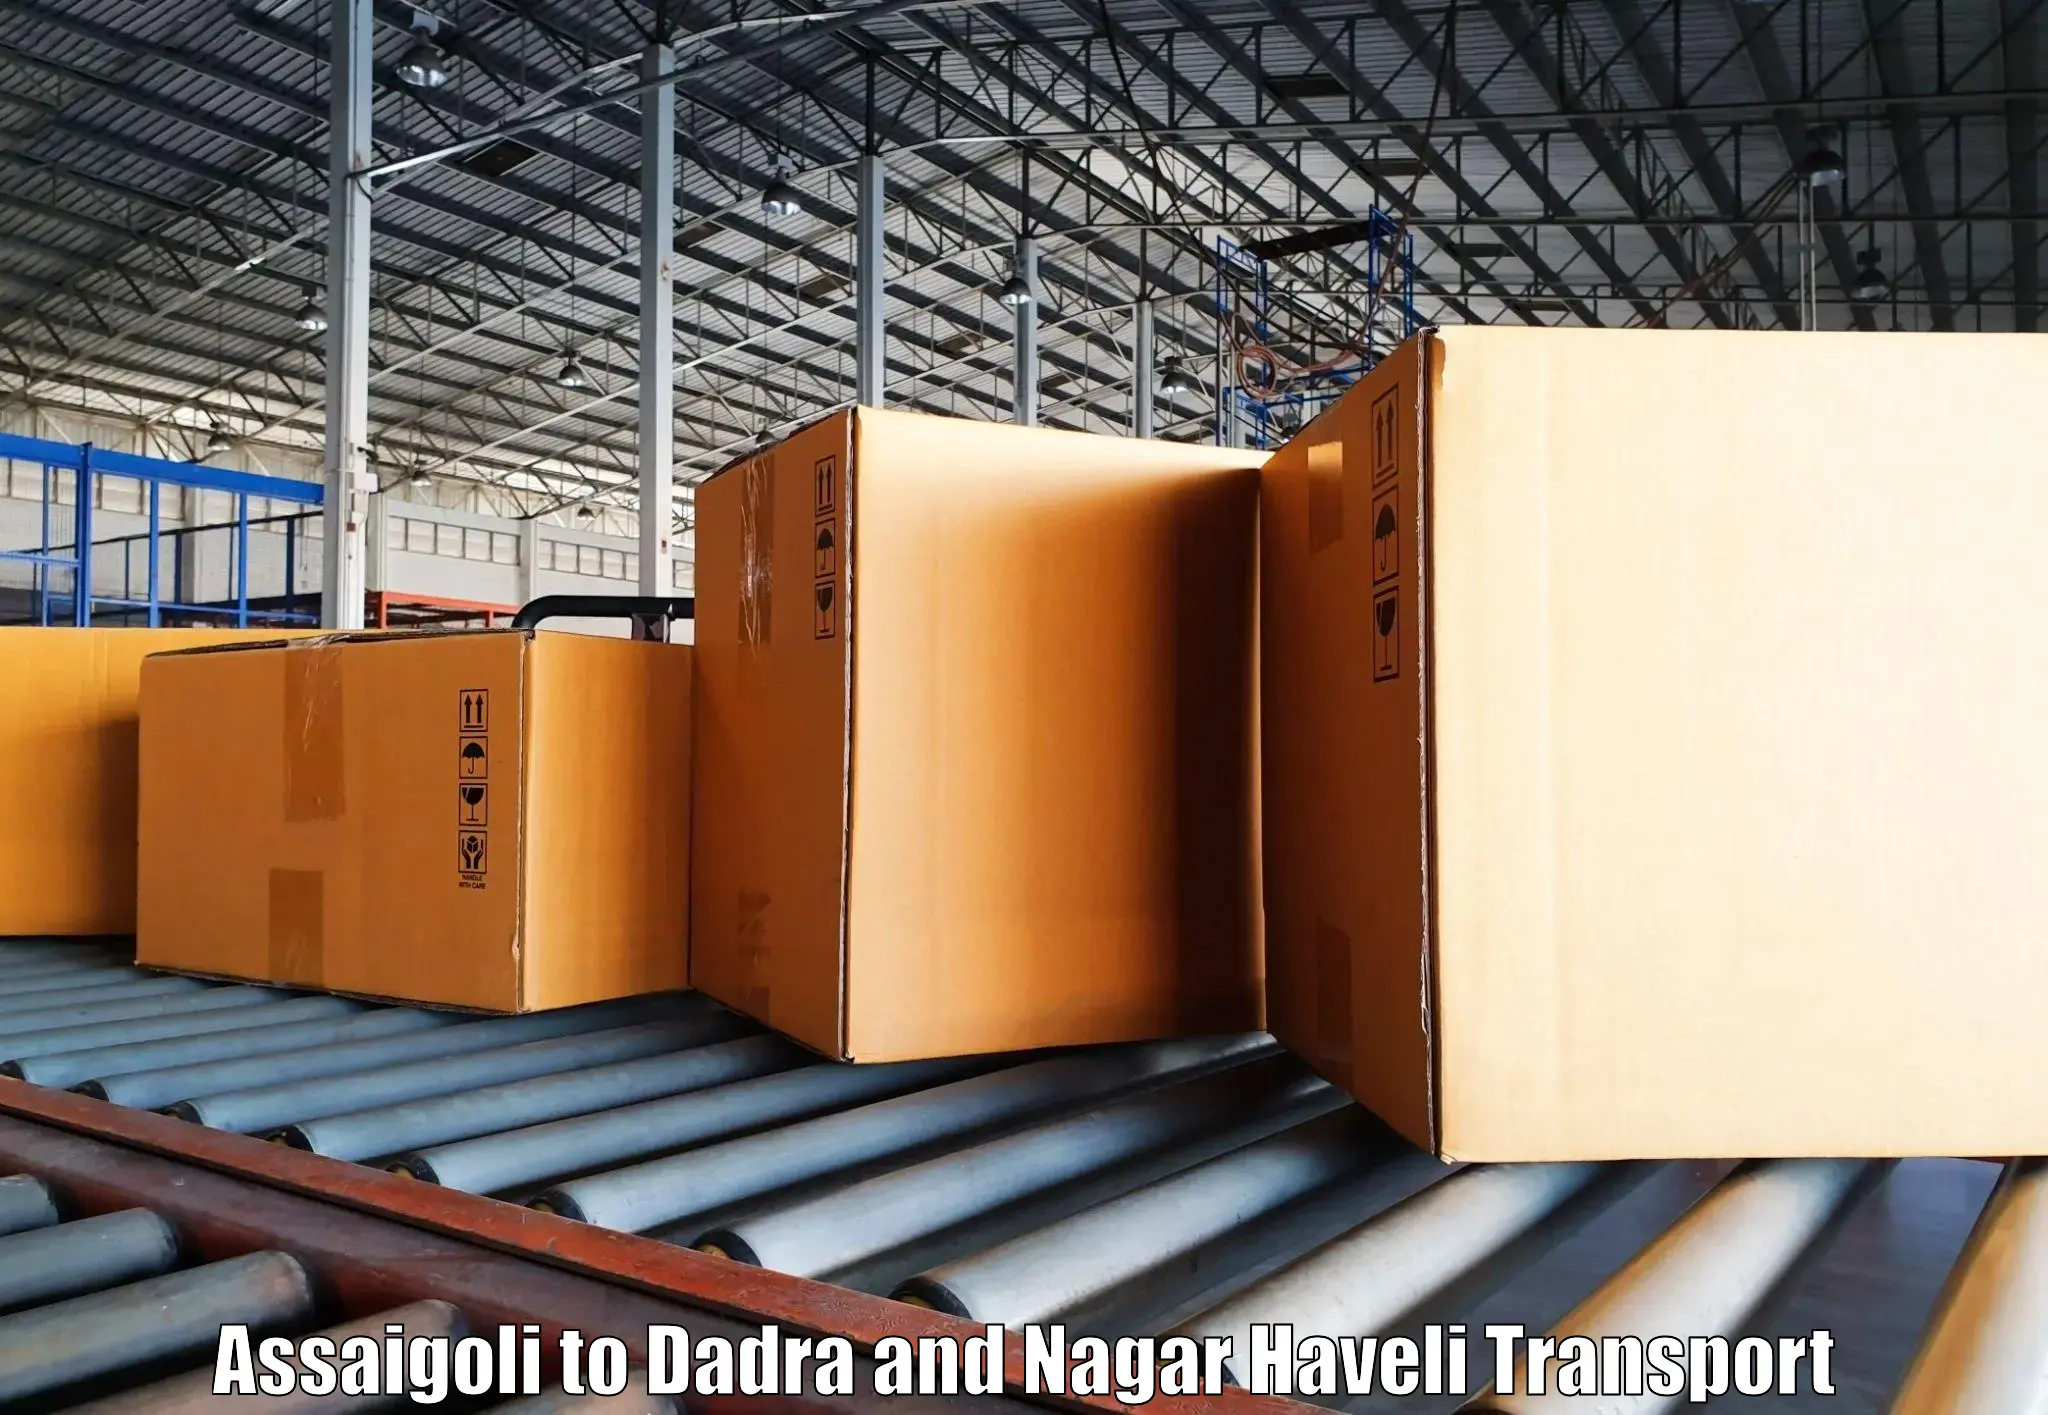 Logistics transportation services Assaigoli to Dadra and Nagar Haveli